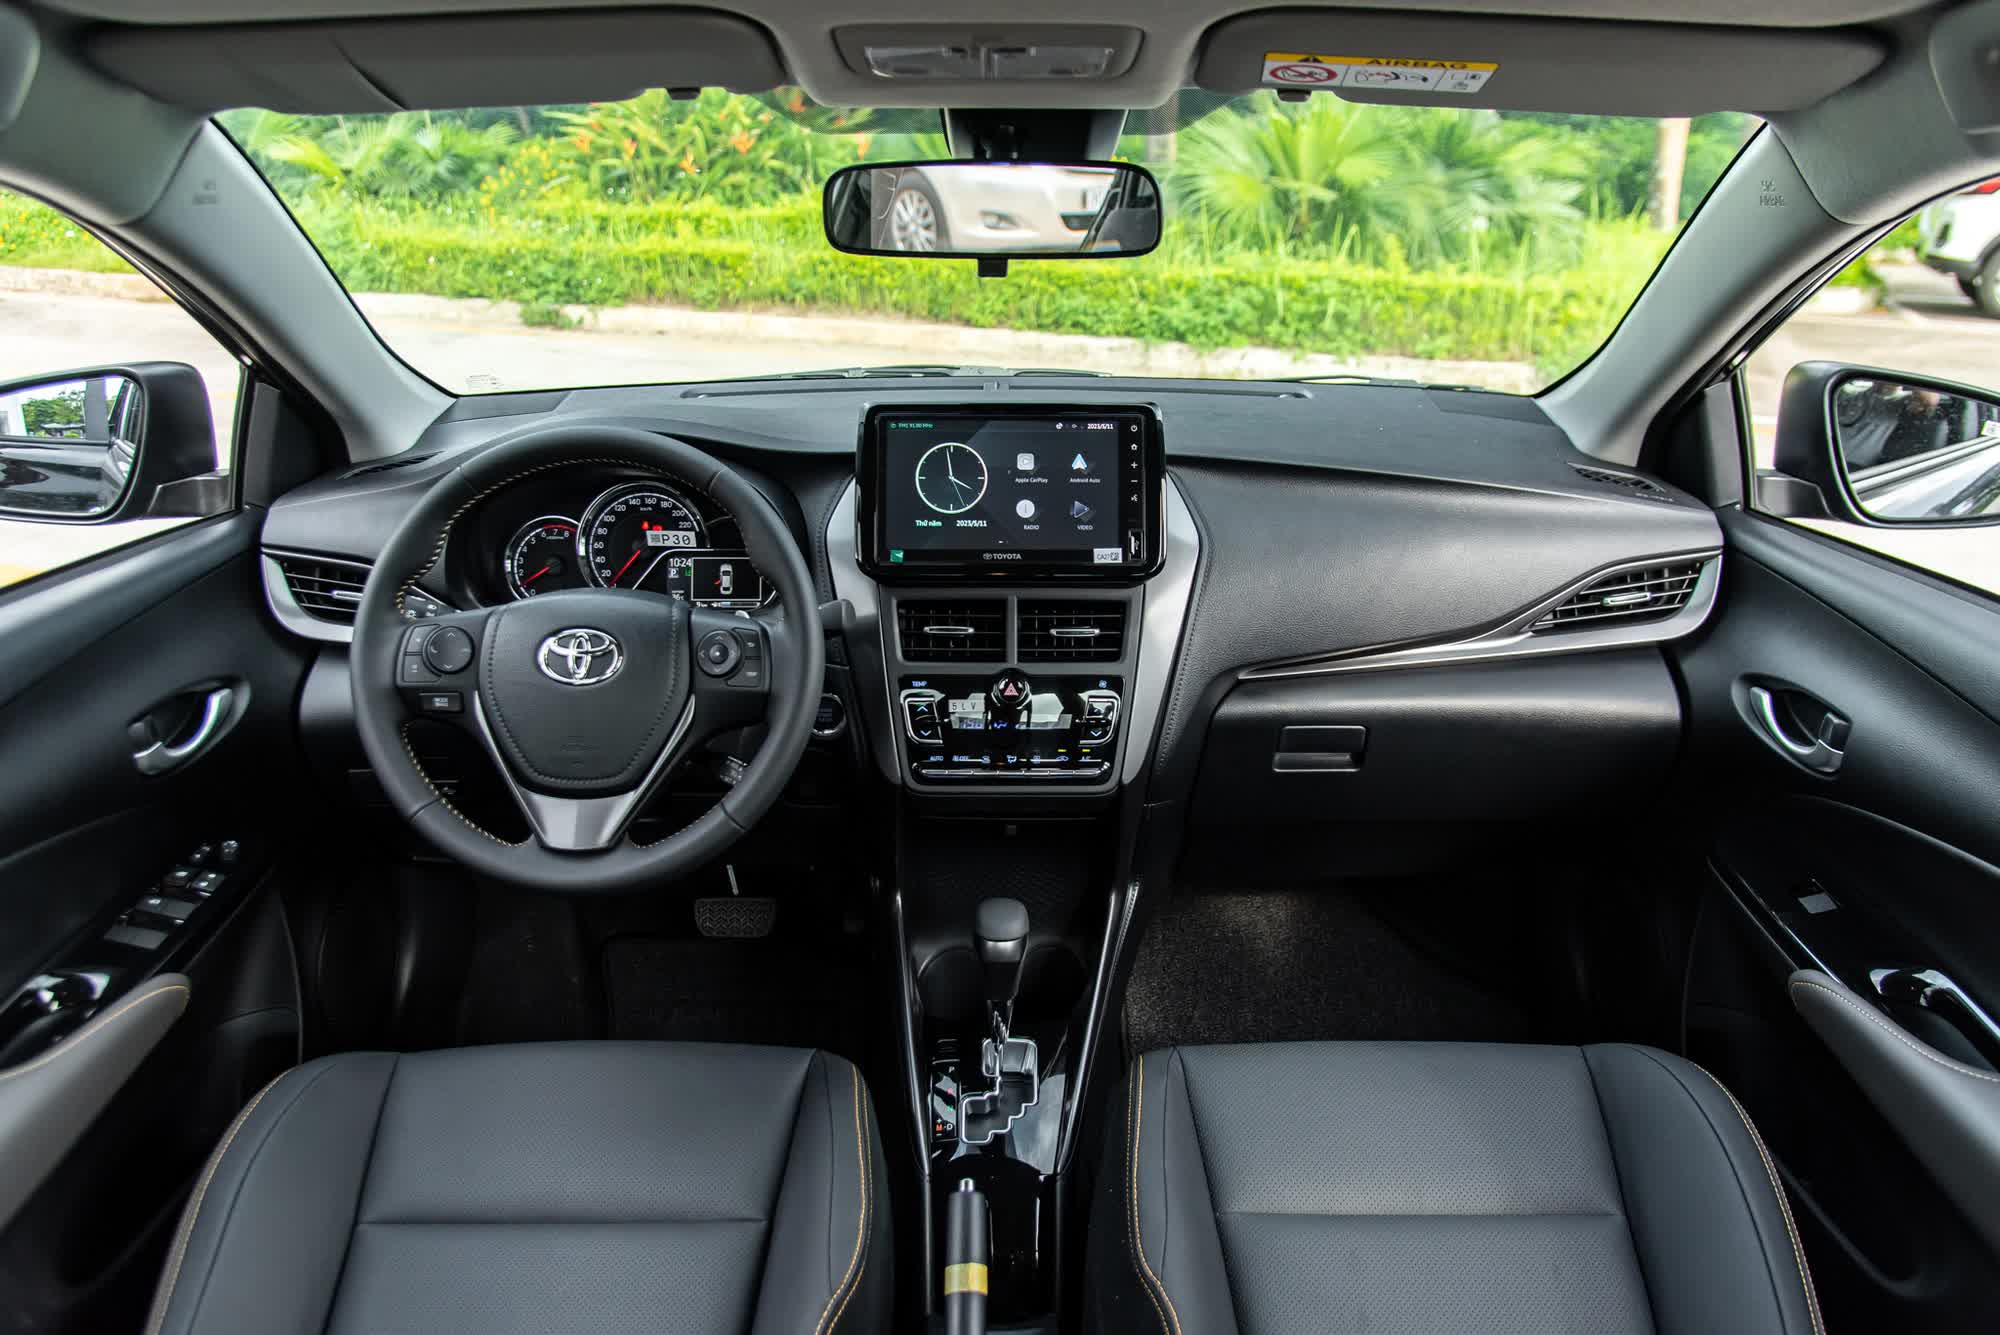 Ra mắt chưa lâu, Toyota Vios đã được ưu đãi giá, quyết lấy lại ngôi vua phân khúc - Ảnh 3.